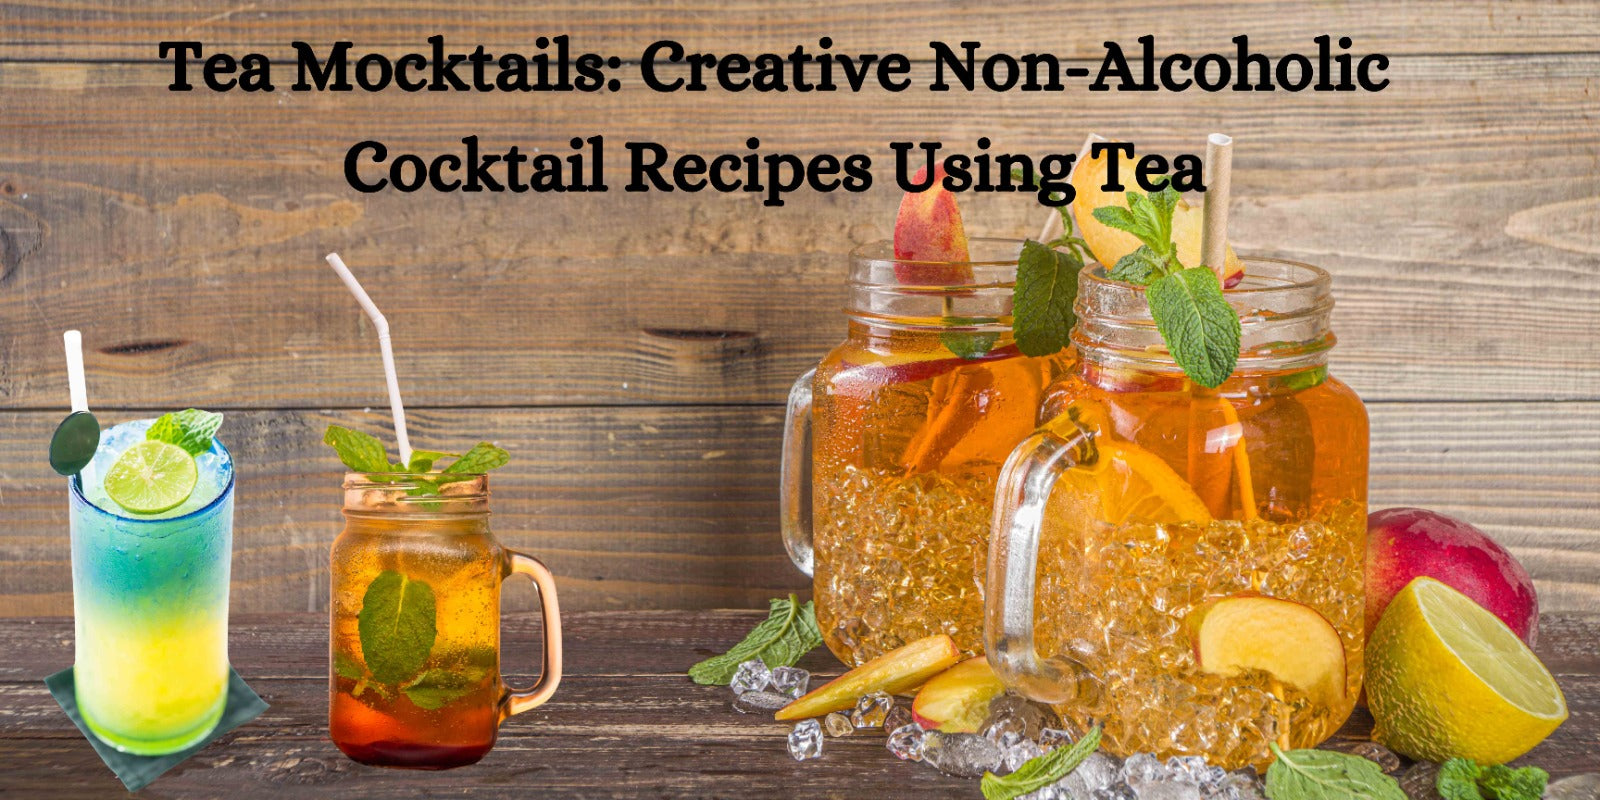 Tea Mocktails: Creative Non-Alcoholic Cocktail Recipes Using Tea